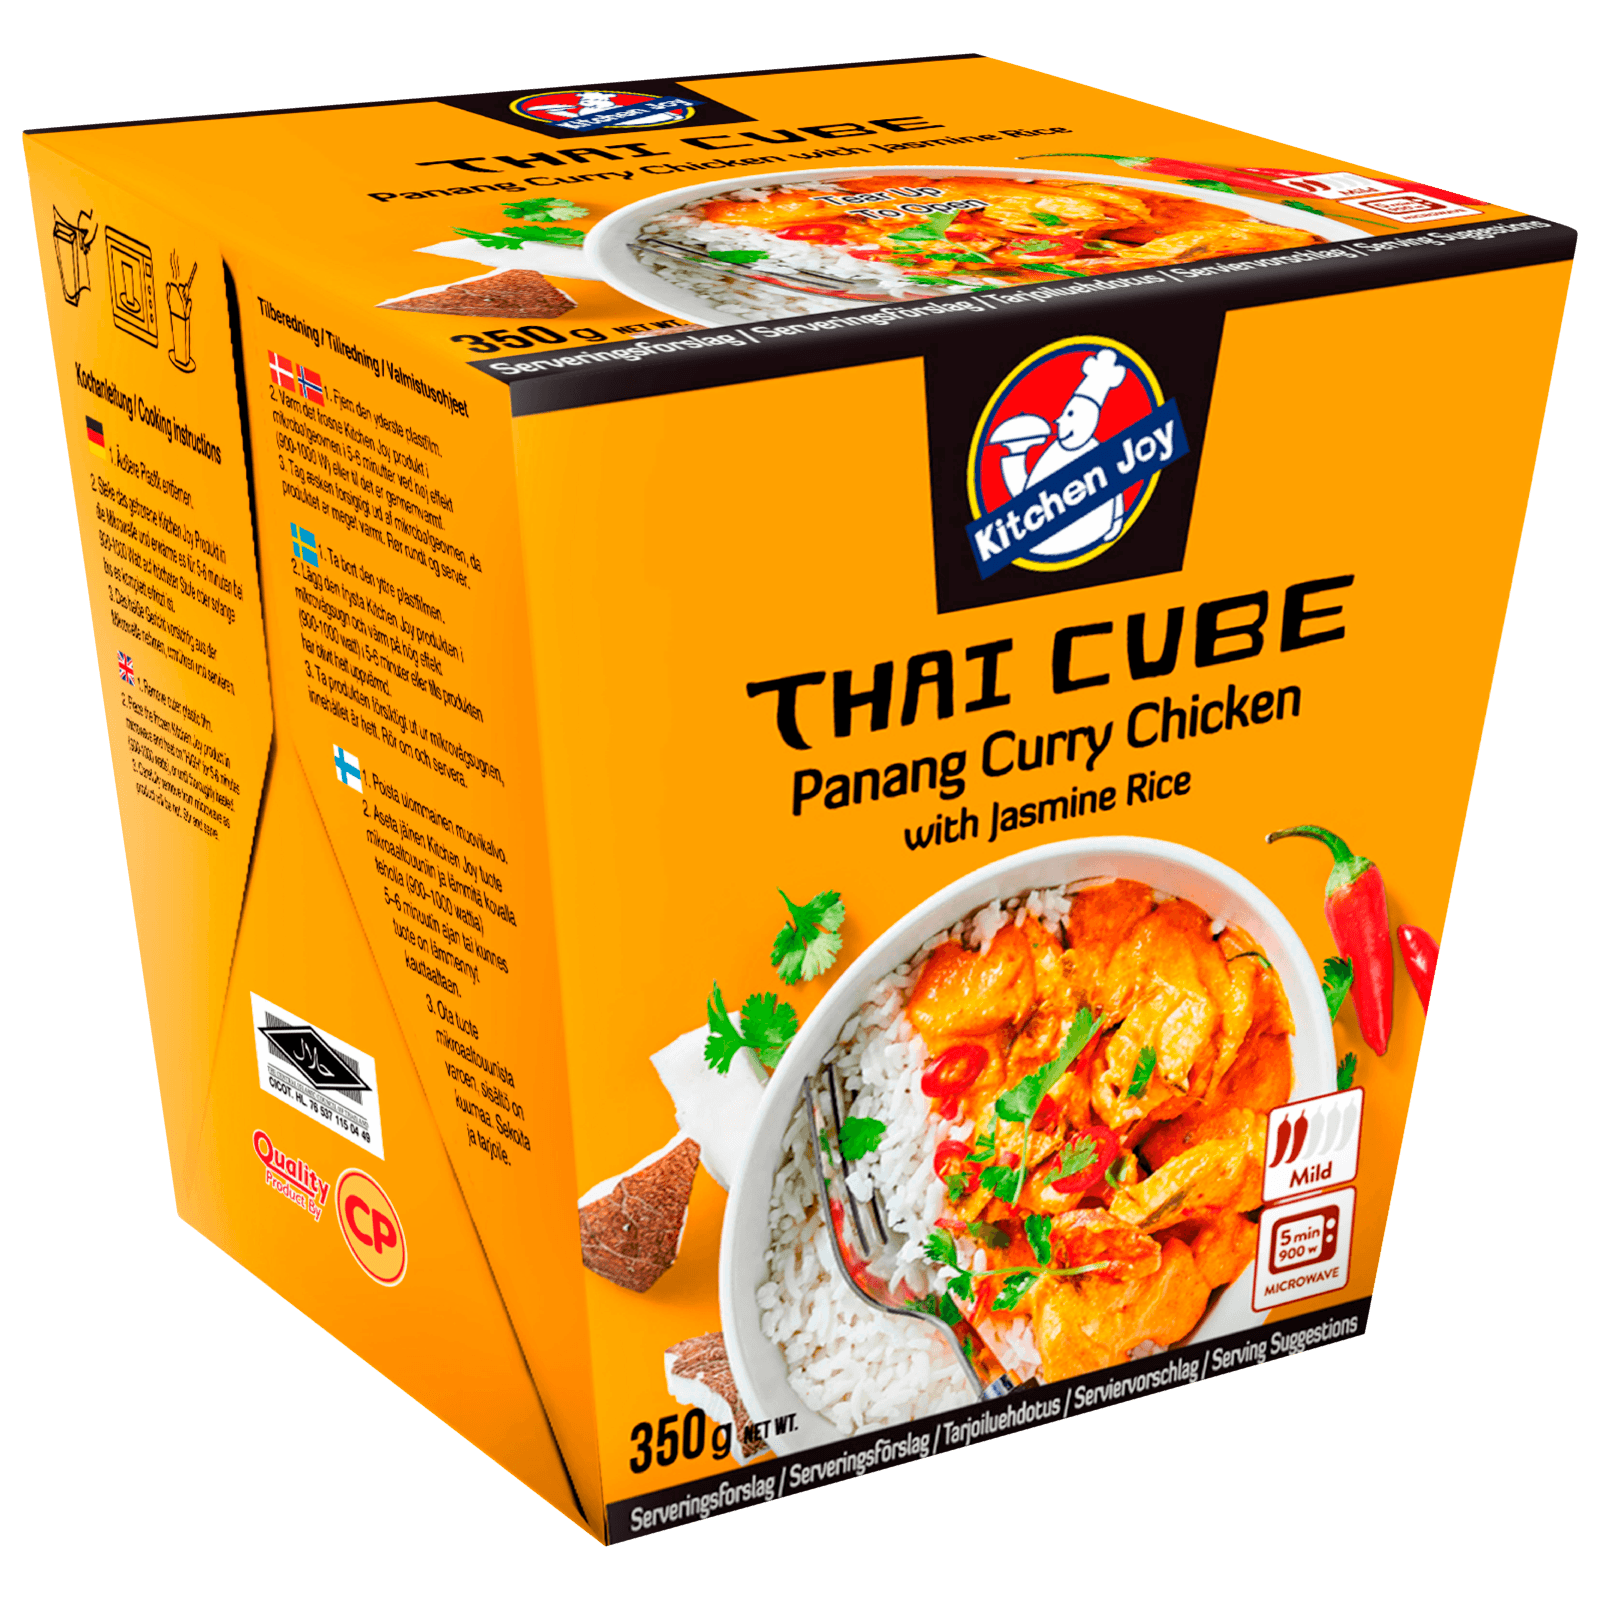 Kitchen Joy Thai Cube Panang Curry Chicken 350g bei REWE online bestellen!